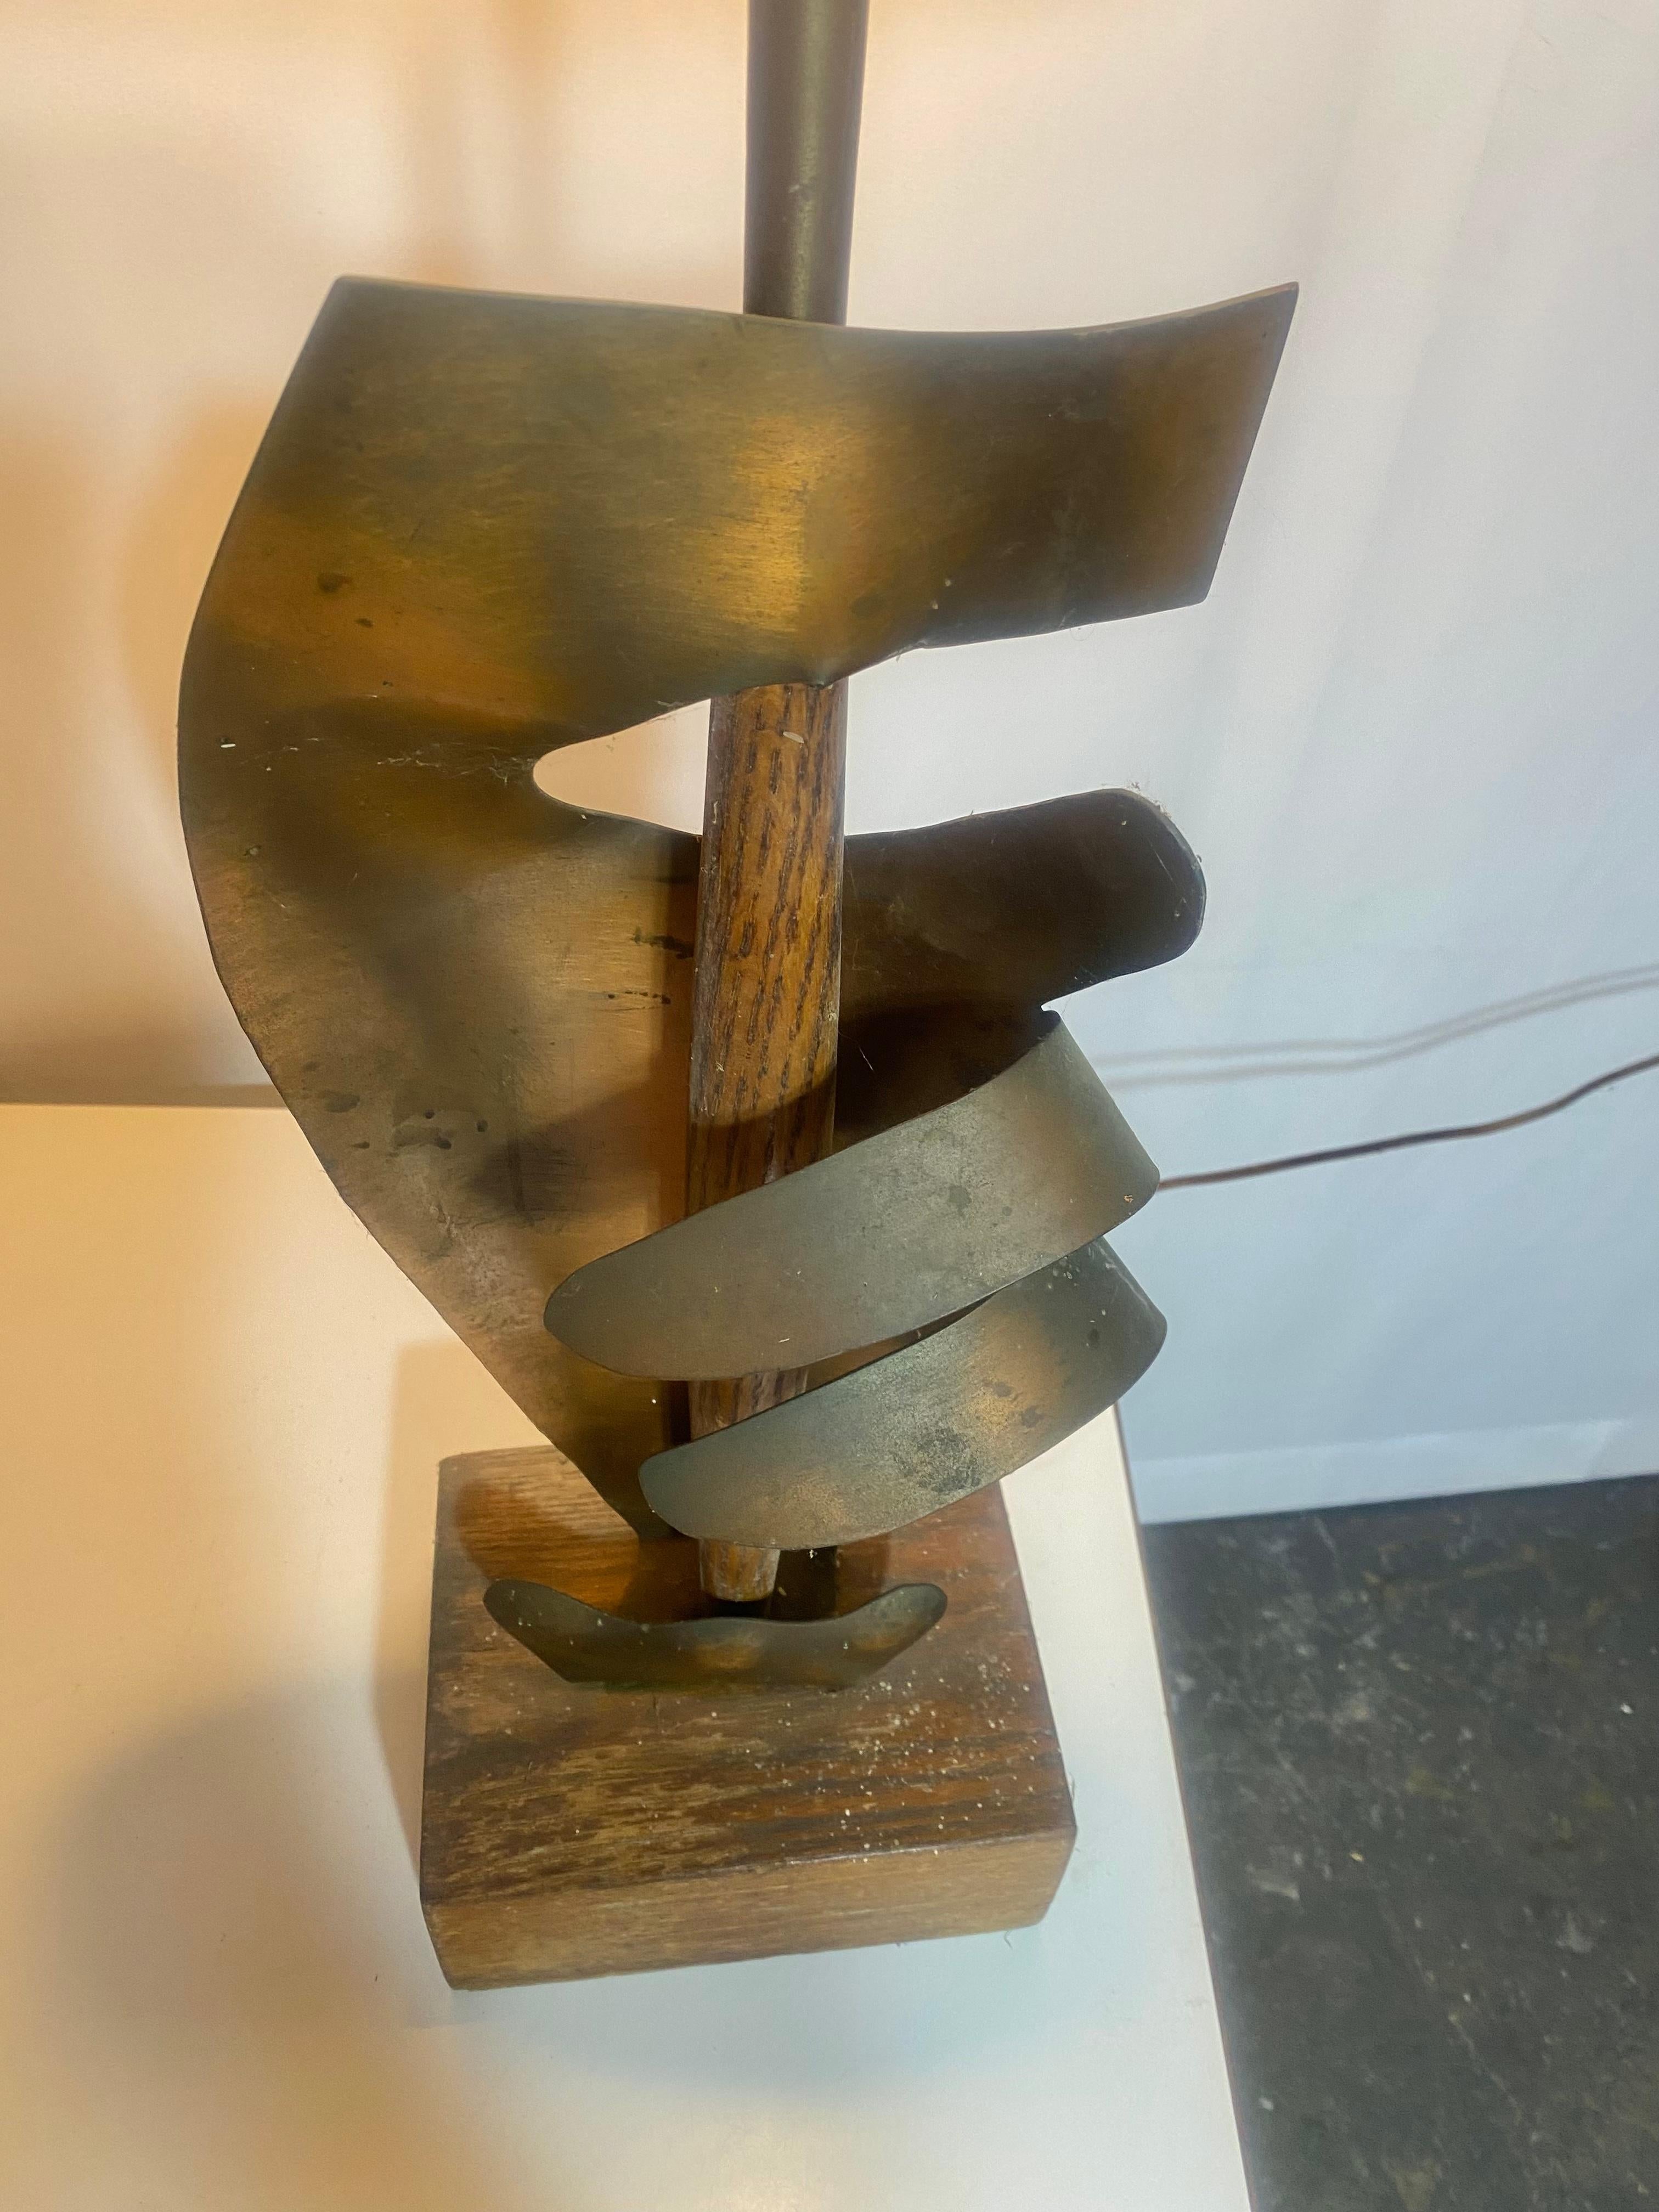 Lampe de table abstraite sculpturale en cuivre HAND du milieu du siècle dernier de Yasha Heifetz,, Conserve l'abat-jour et l'embout d'origine,, Signé Heifetz sur la base,,Design moderniste classique,,, Exemple rarement vu,, 